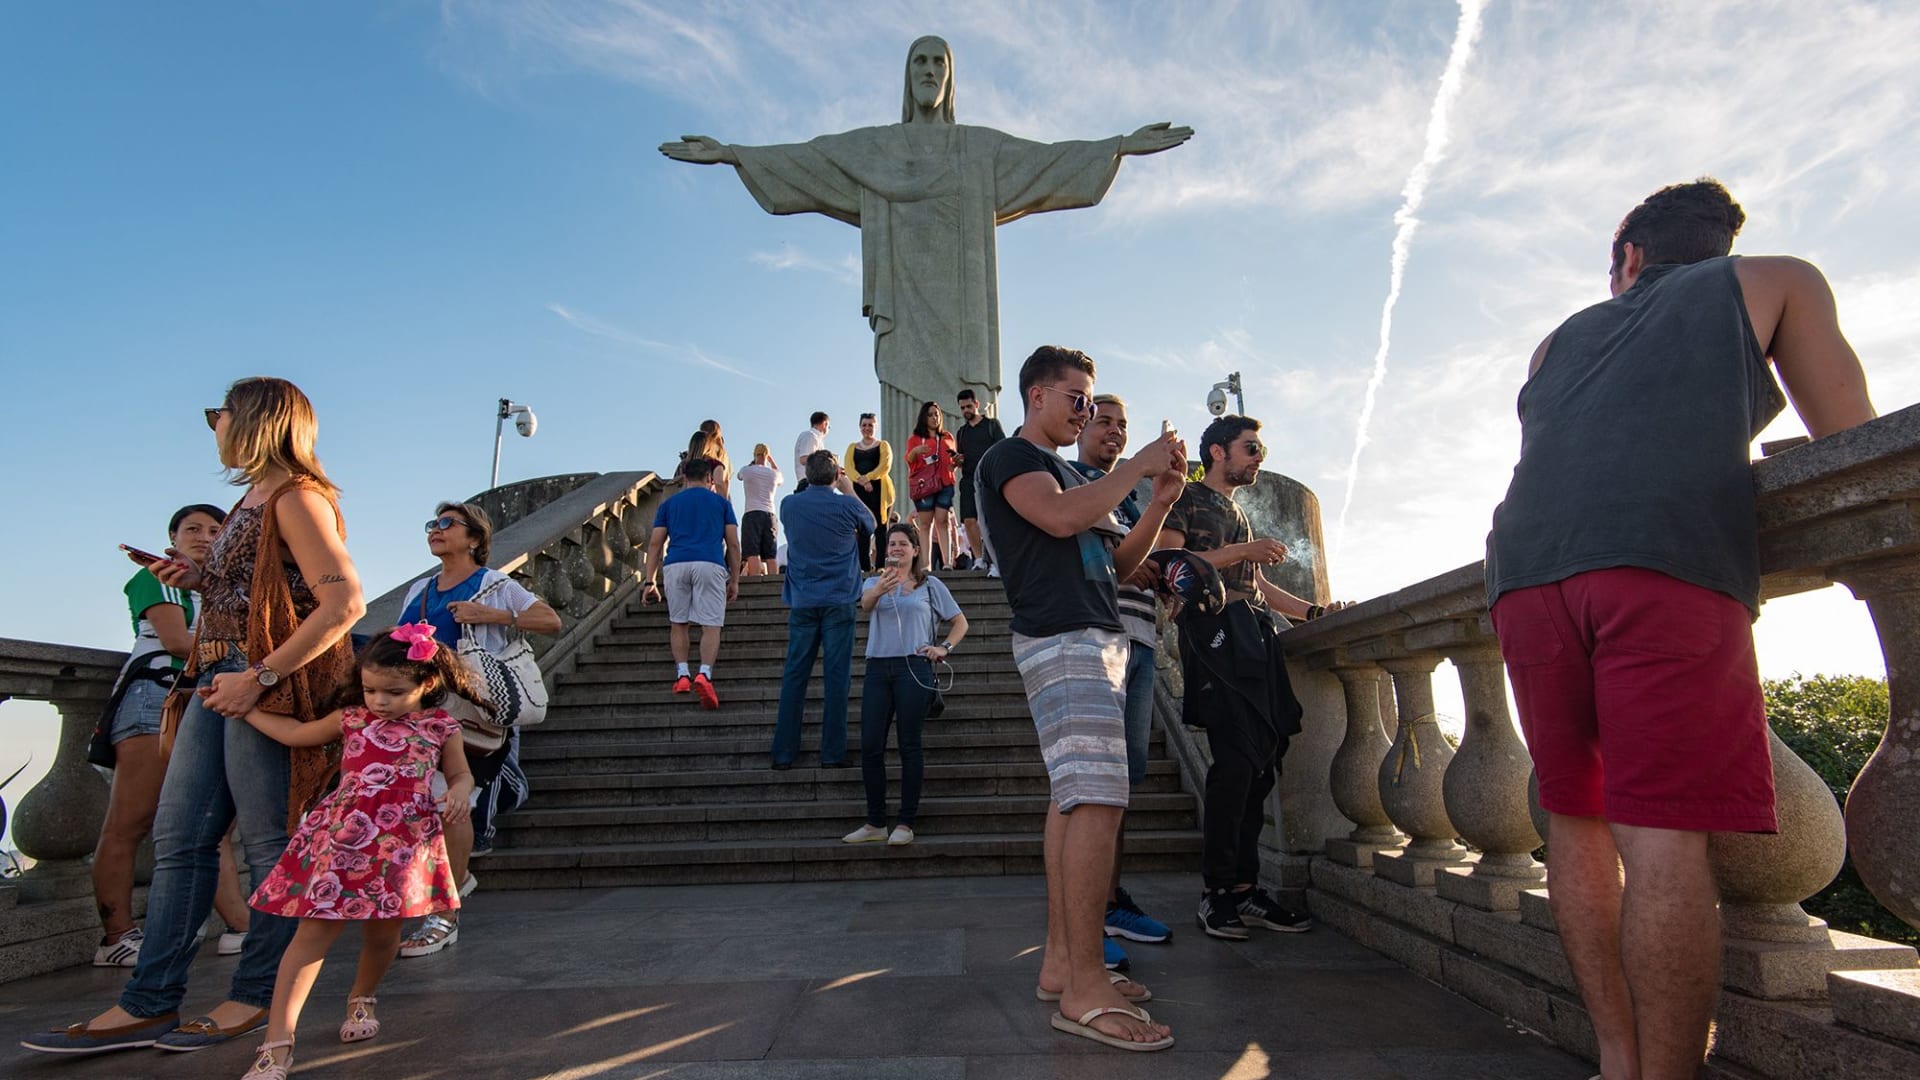 شاهد أصدقاء يقيمون حفلة على منصة متدلية من منطاد هوائي بالبرازيل